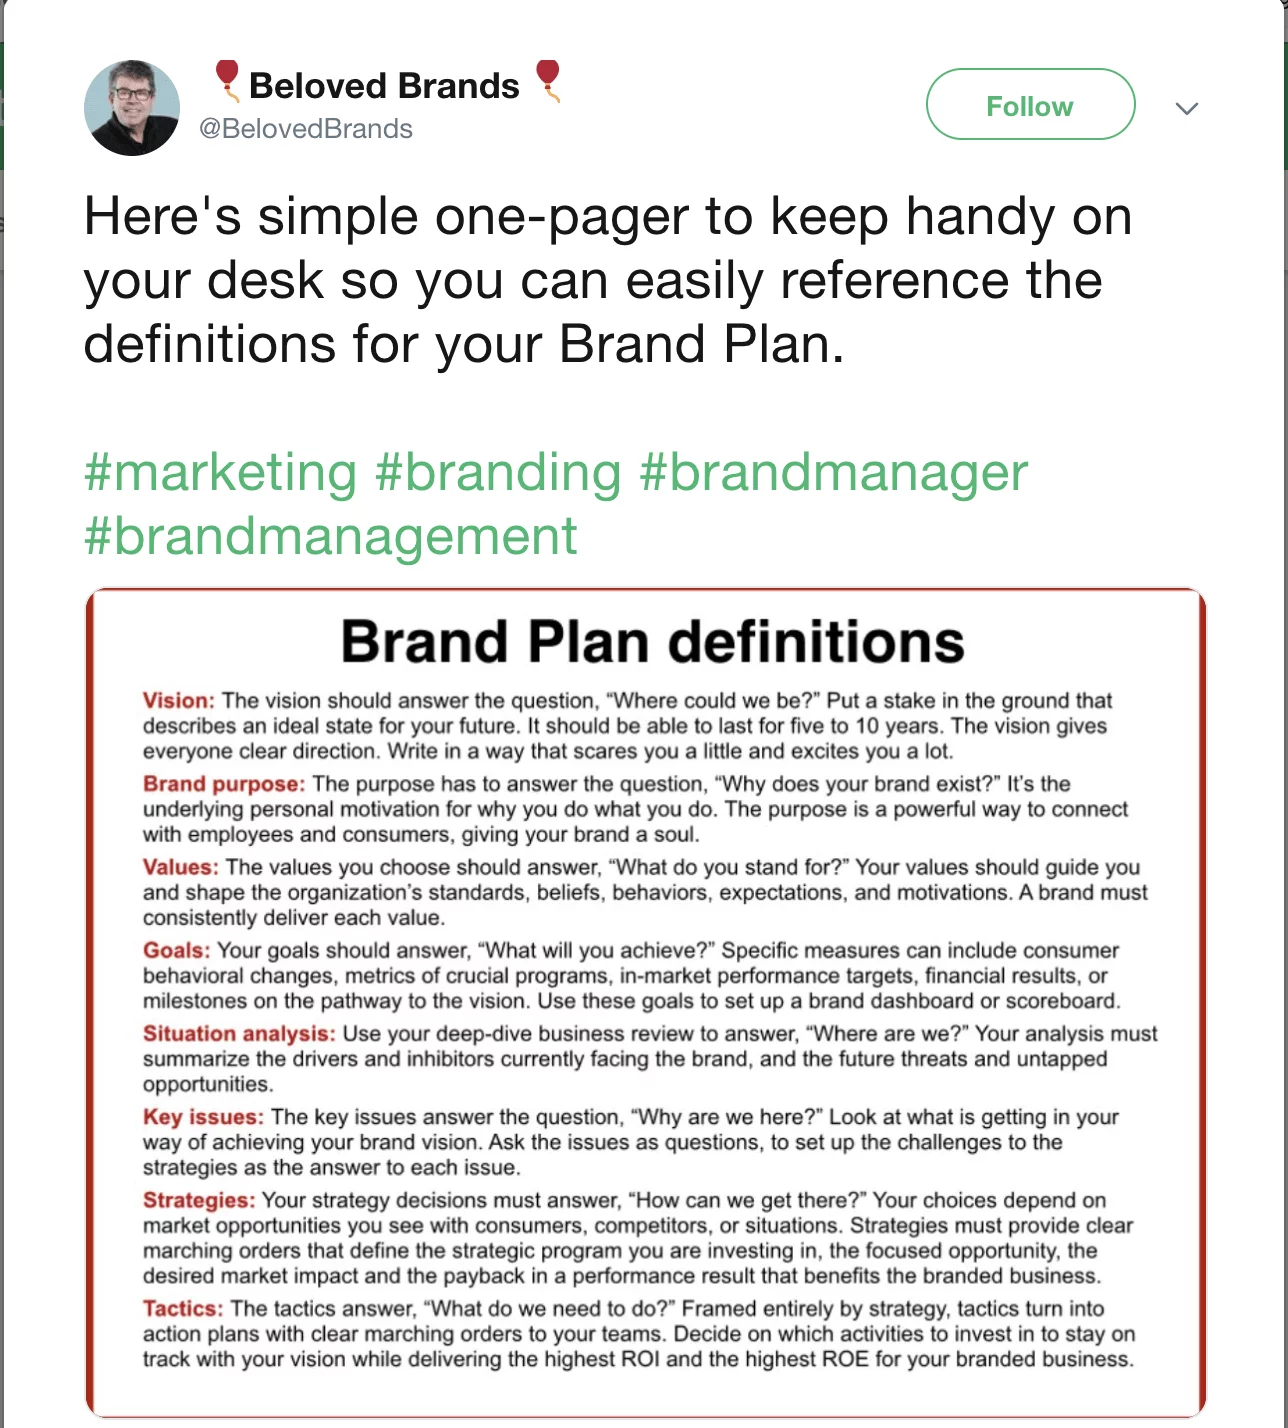 brand management definition beloved brands tweet